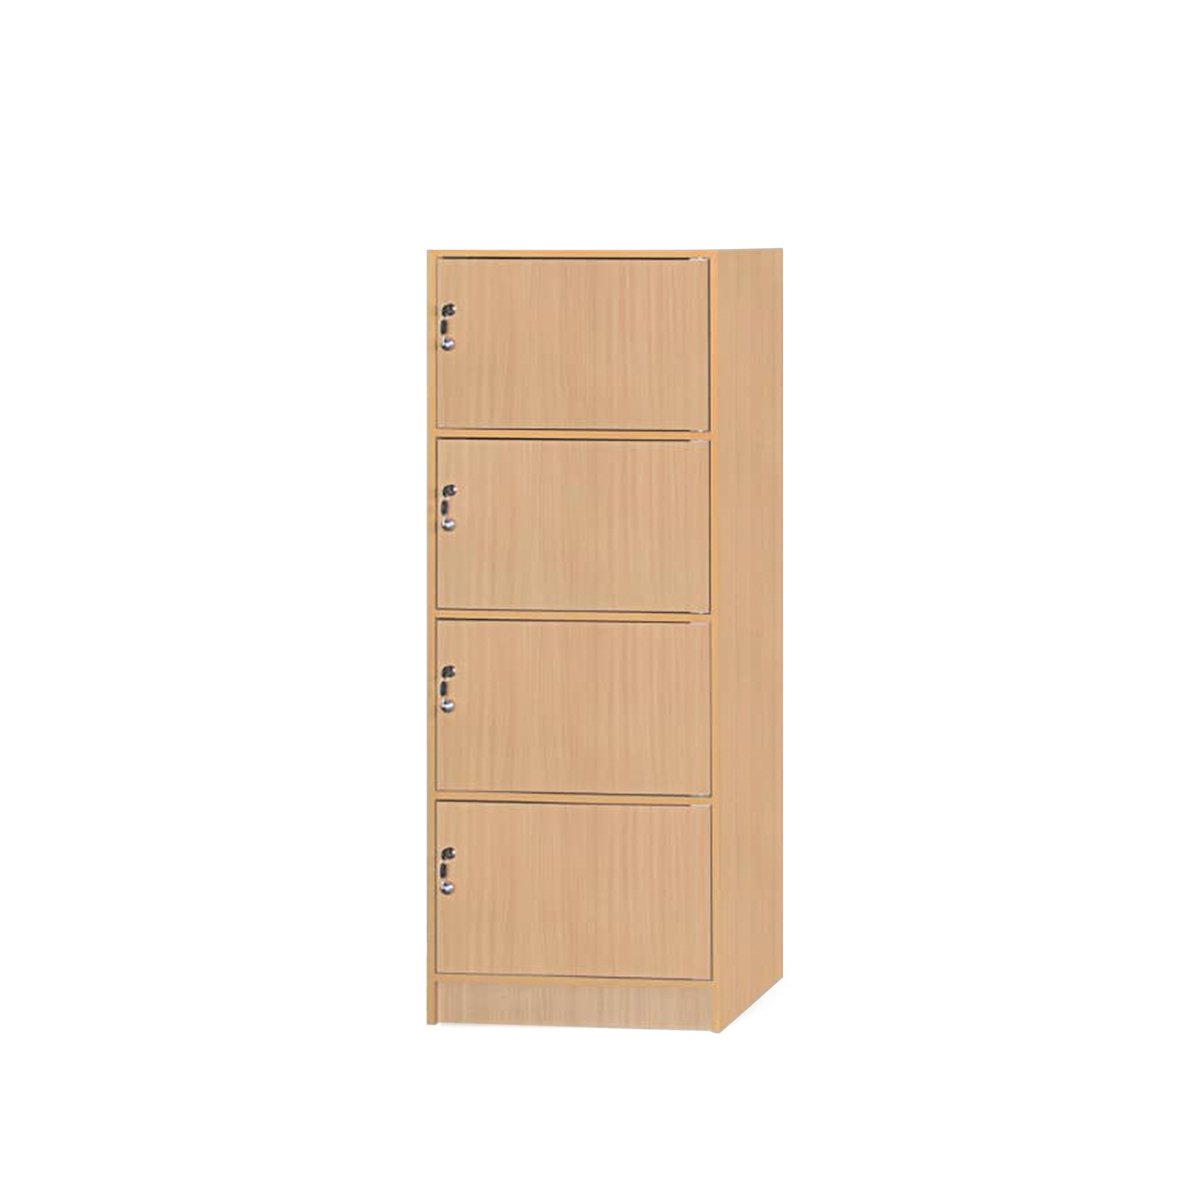 Maple Leaf Locker Cabinet 4 Door Beech